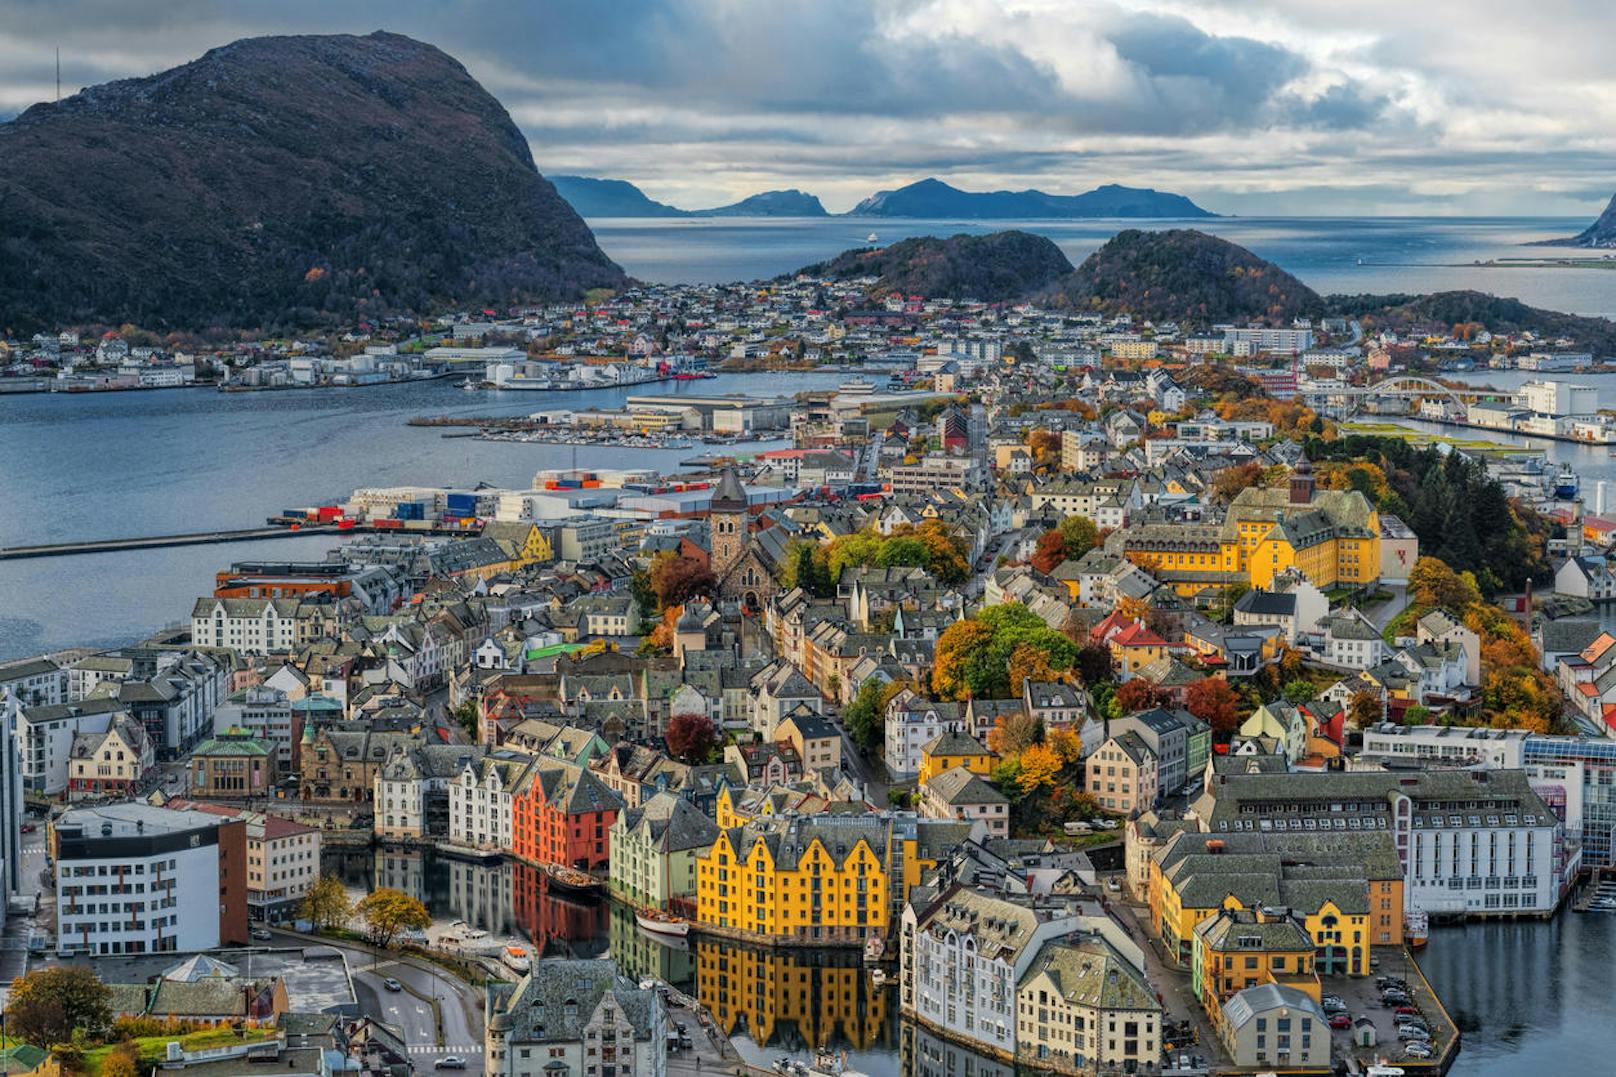 Wer nach <b>Oslo</b> möchte, muss schnell sein: Aktuell gibt es einige wenige Angebote für Reisen in die norwegische Hauptstadt ab angenehmen 28 Euro.